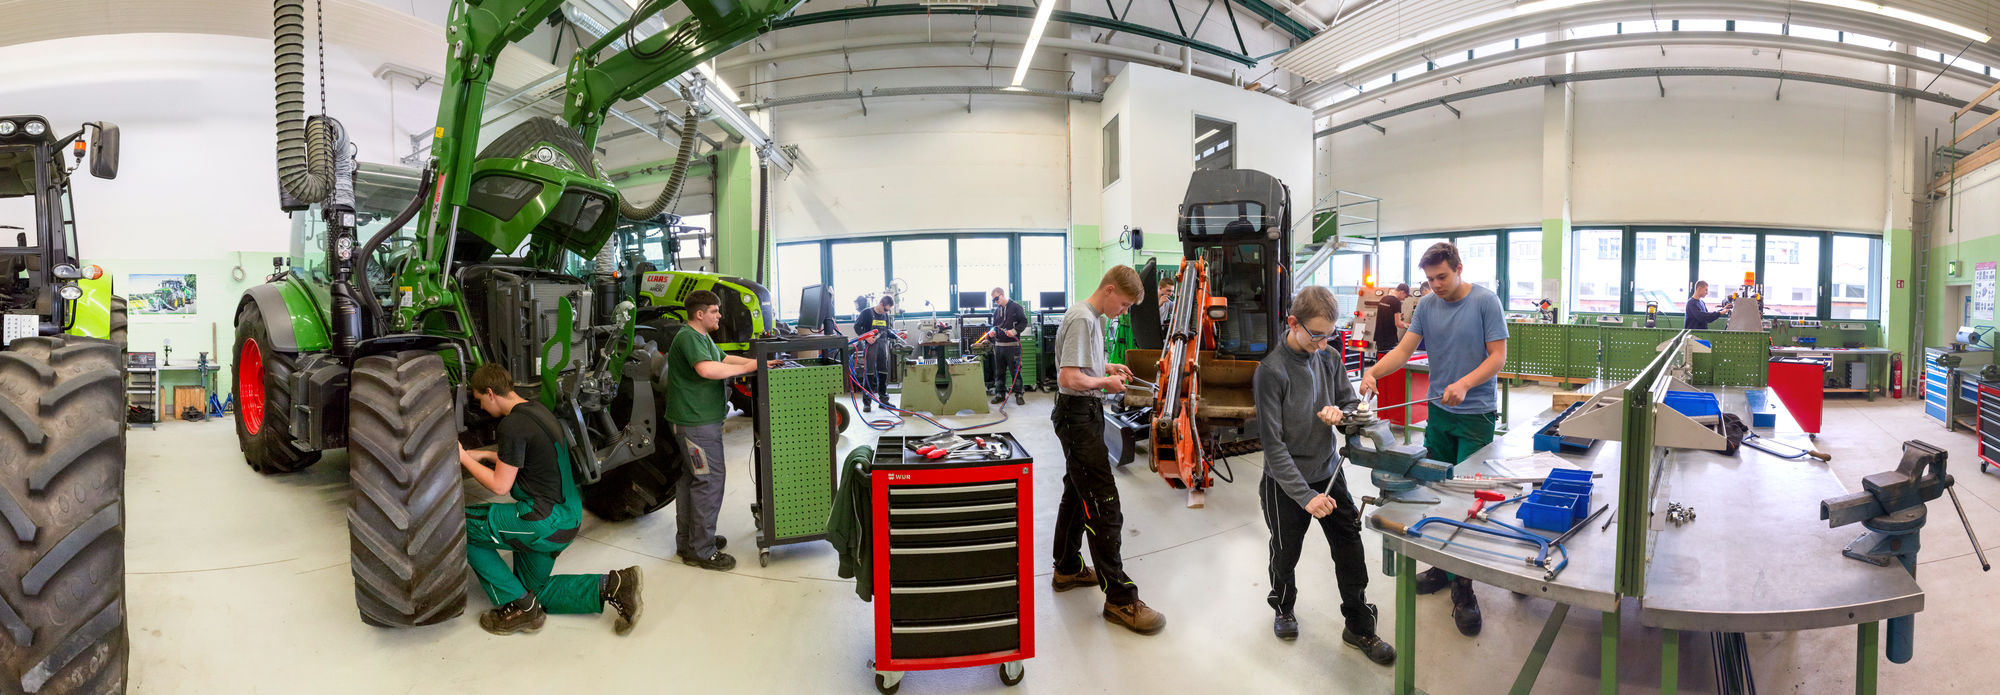 Dieses Bild zeigt die Werkstatt für Land- und Baumaschinenmechatroniker in Plauen.